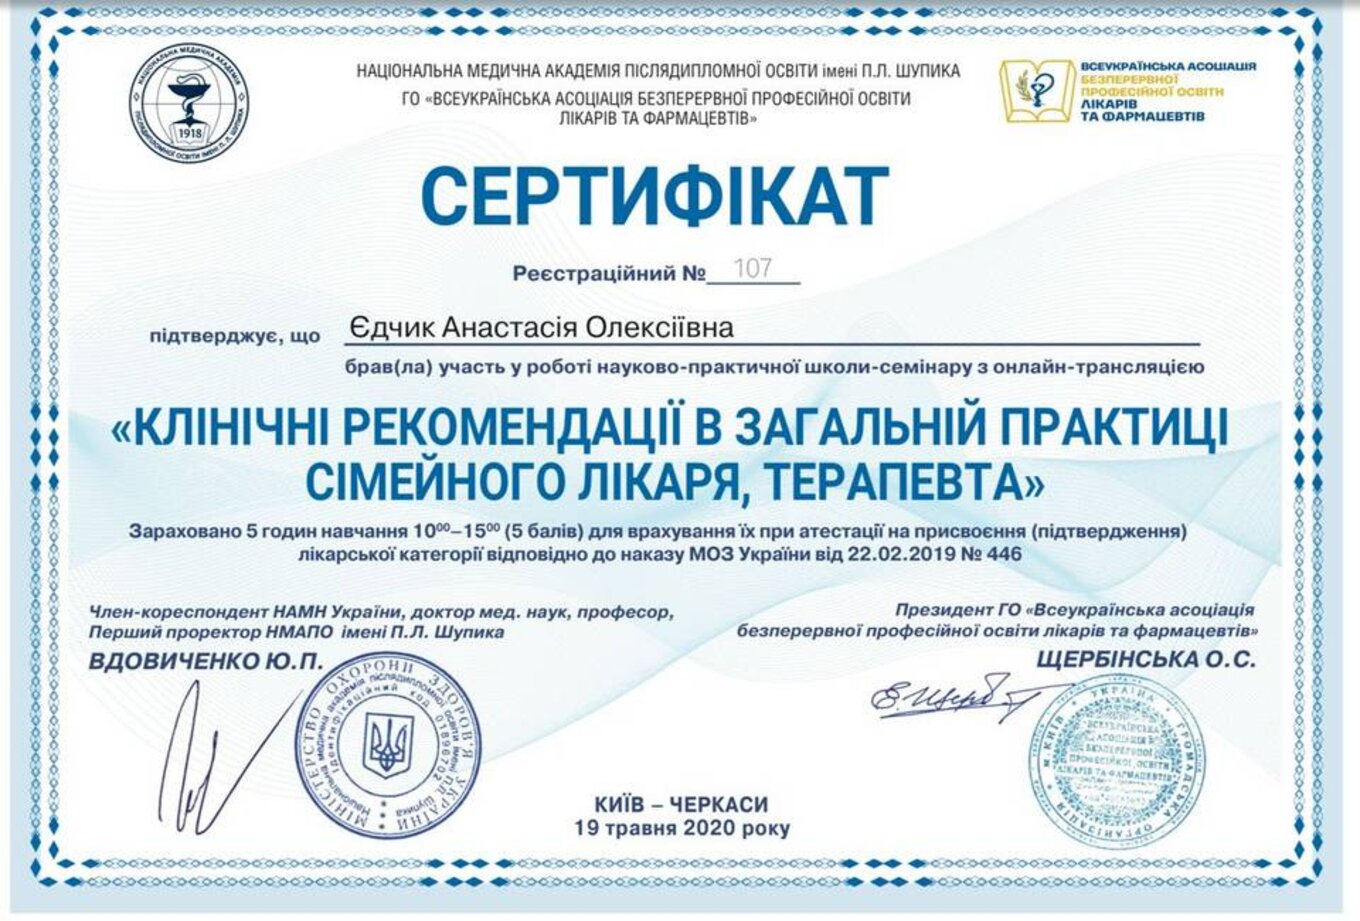 certificates/yedchik-anastasiya-oleksiyivna/erc-edchik-cert-22.jpg